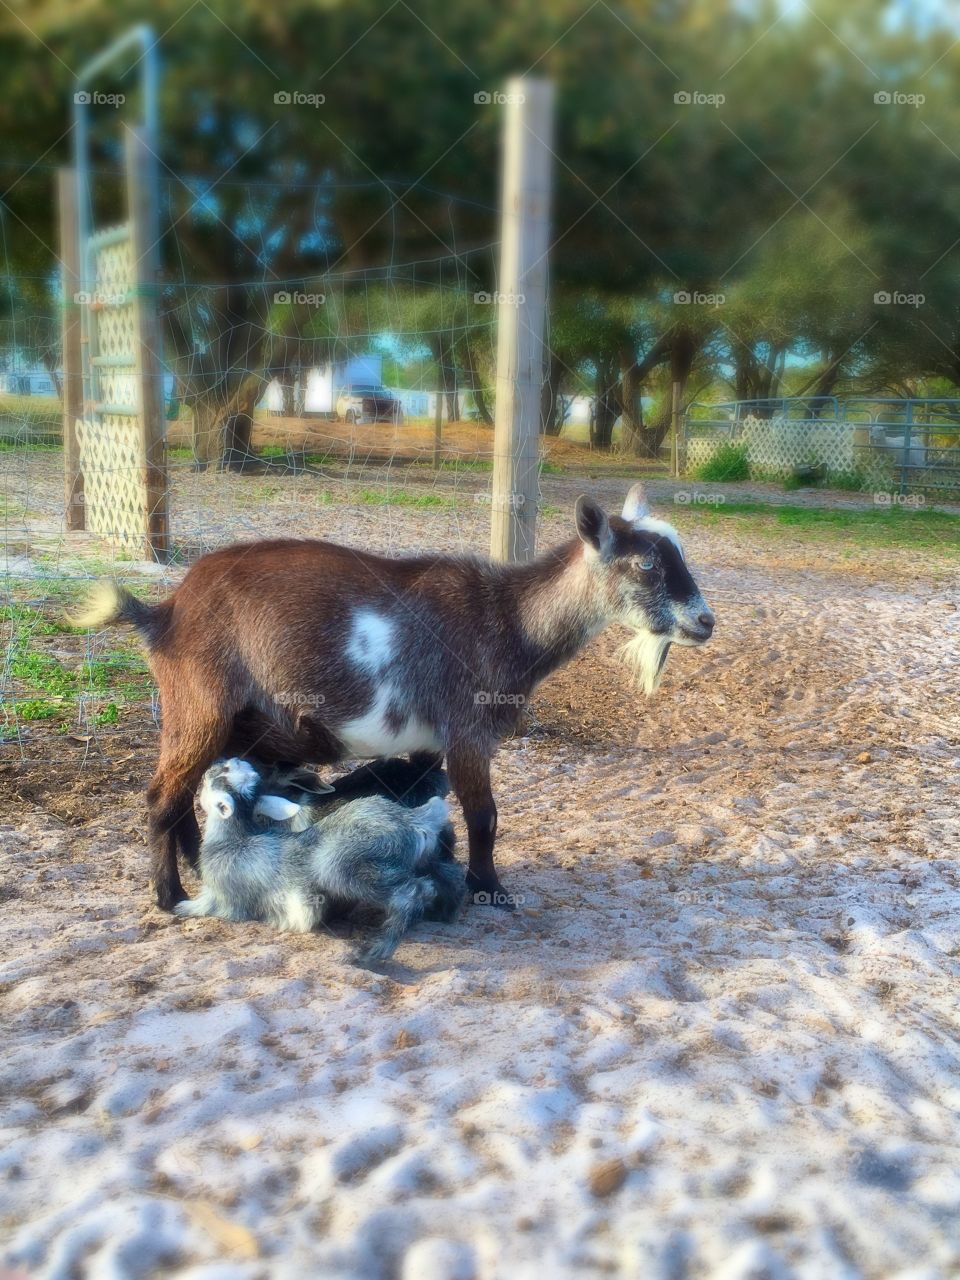 Breastfeeding goat